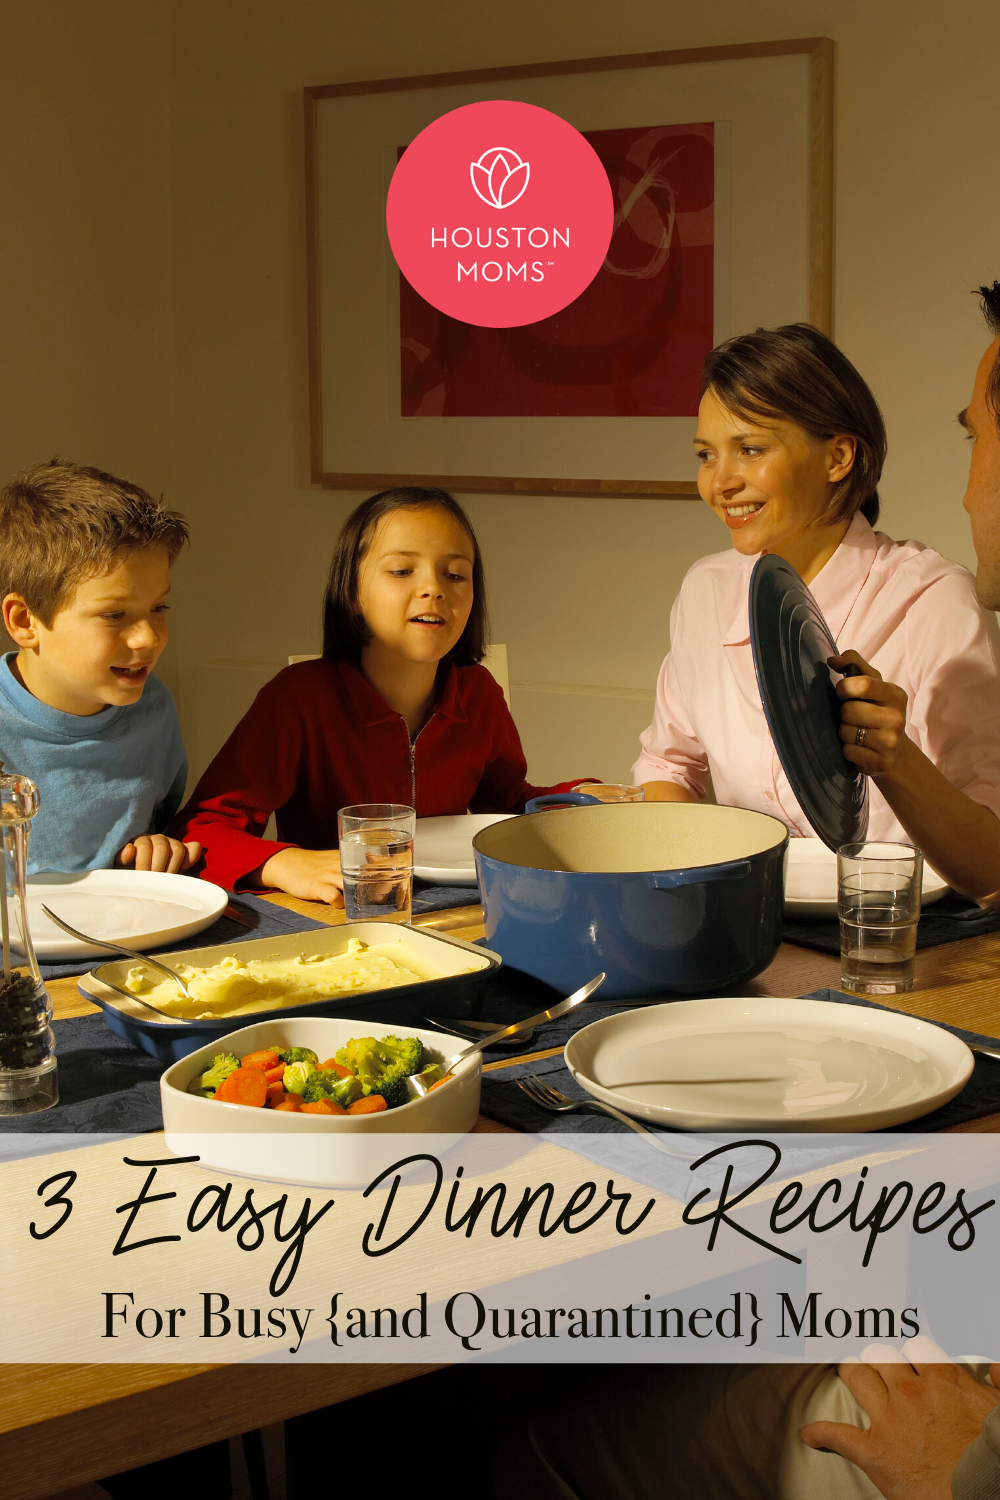 Houston Moms Blog "3 Easy Dinner Recipes for Busy {and Quarantined} Moms" #houstonomomsblog #houstonmoms #momsaroundhouston